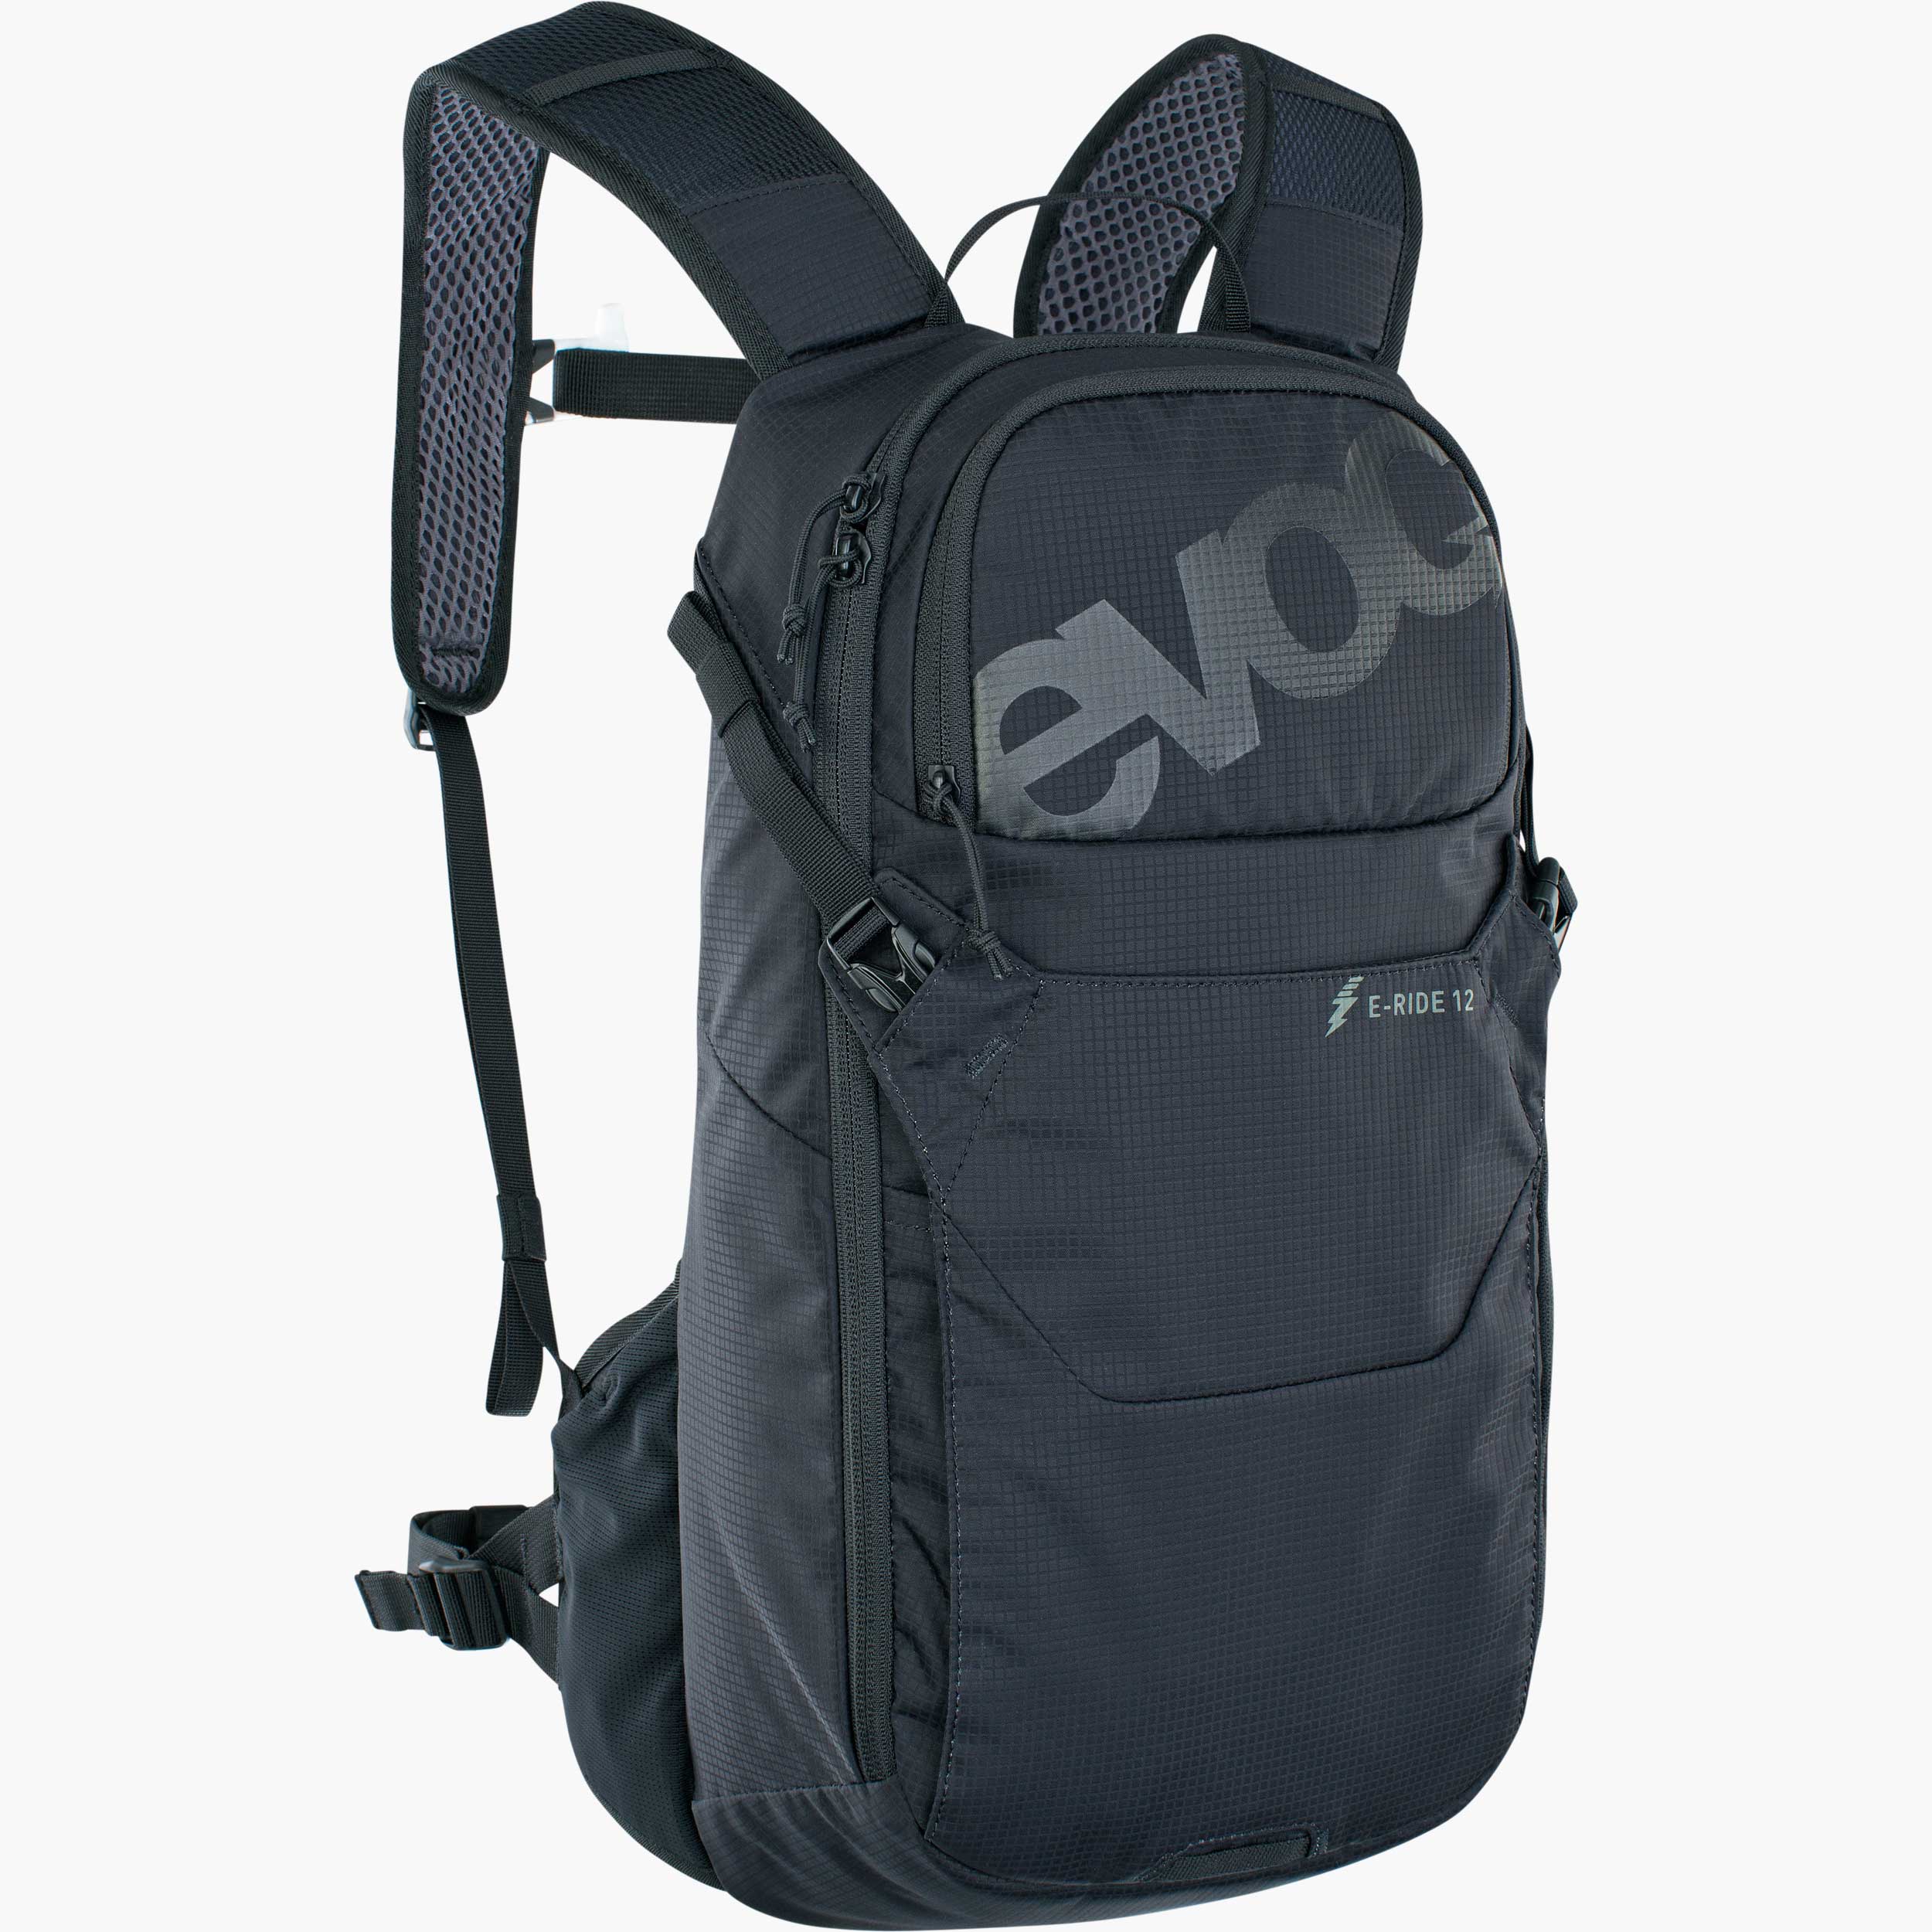 Technicals Alpine Aqua Ii 35+5 Litre Rucksack Travel Bag 